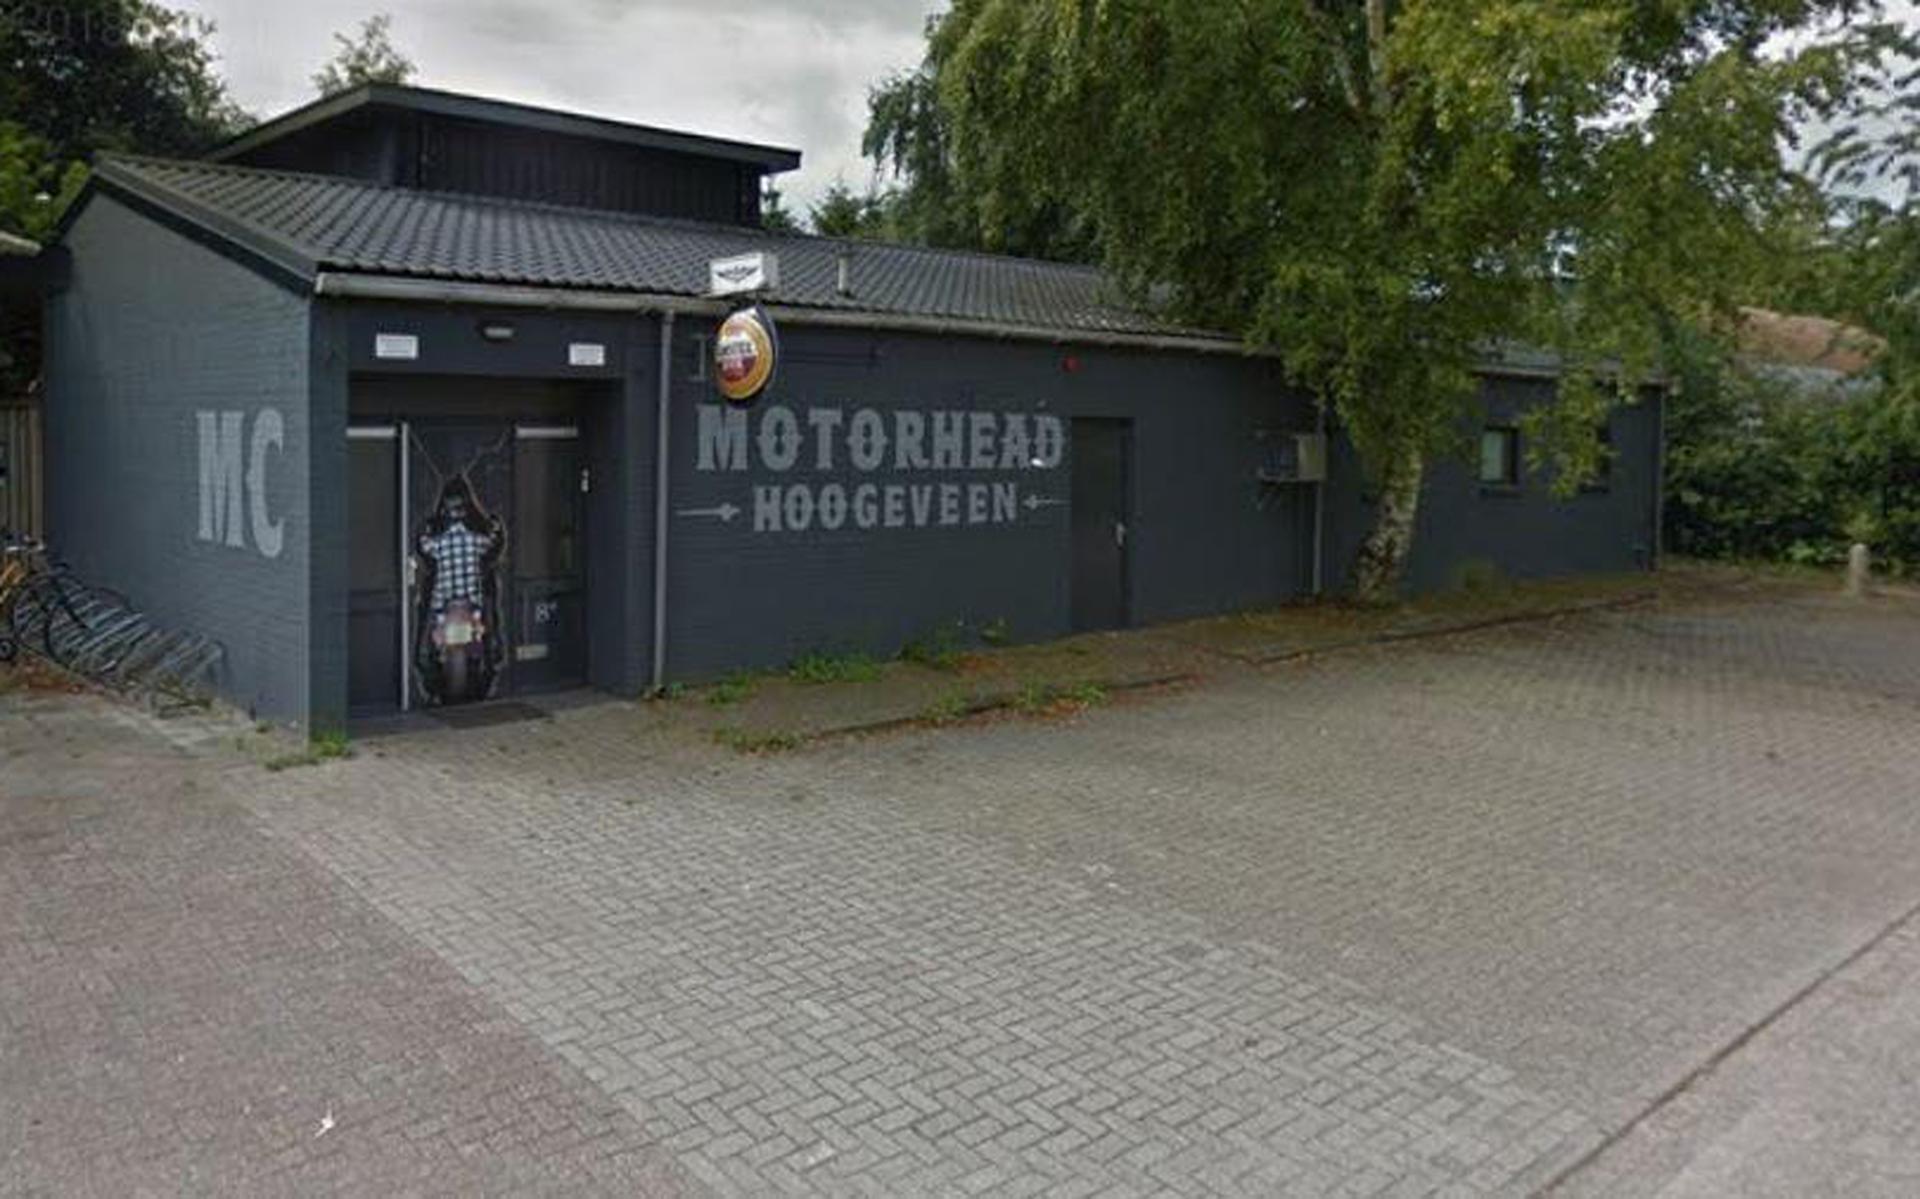 Motorclub MC Motorhead houdt een Pokerrun voor het goede doel. Foto DvhN/Google Maps
